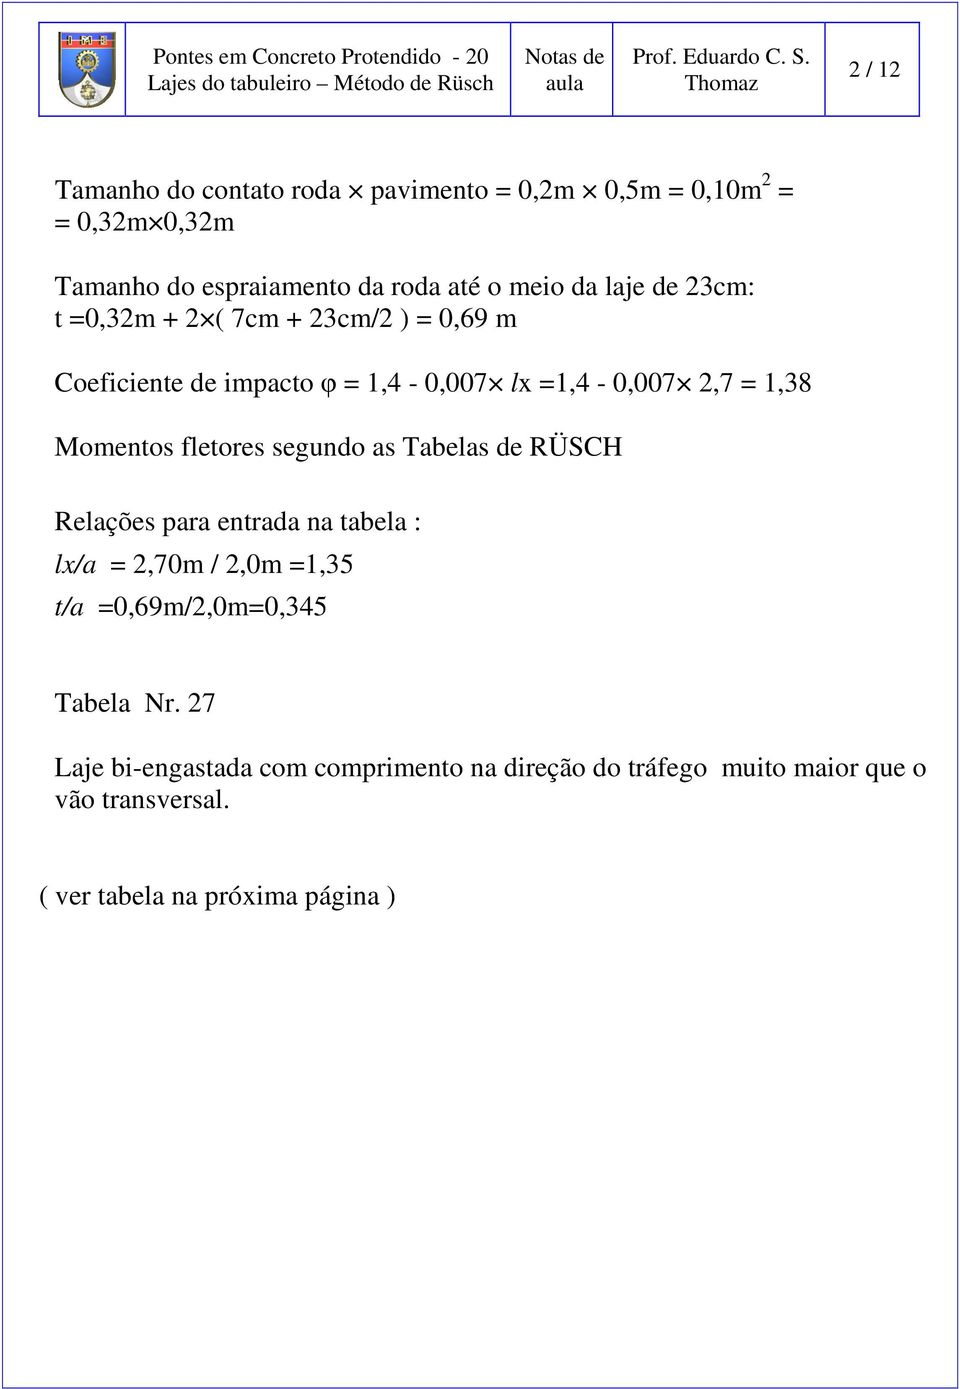 segundo as Tabelas de RÜSCH Relações para entrada na tabela : lx/a 2,70 / 2,0 1,35 t/a 0,69/2,00,345 Tabela Nr.